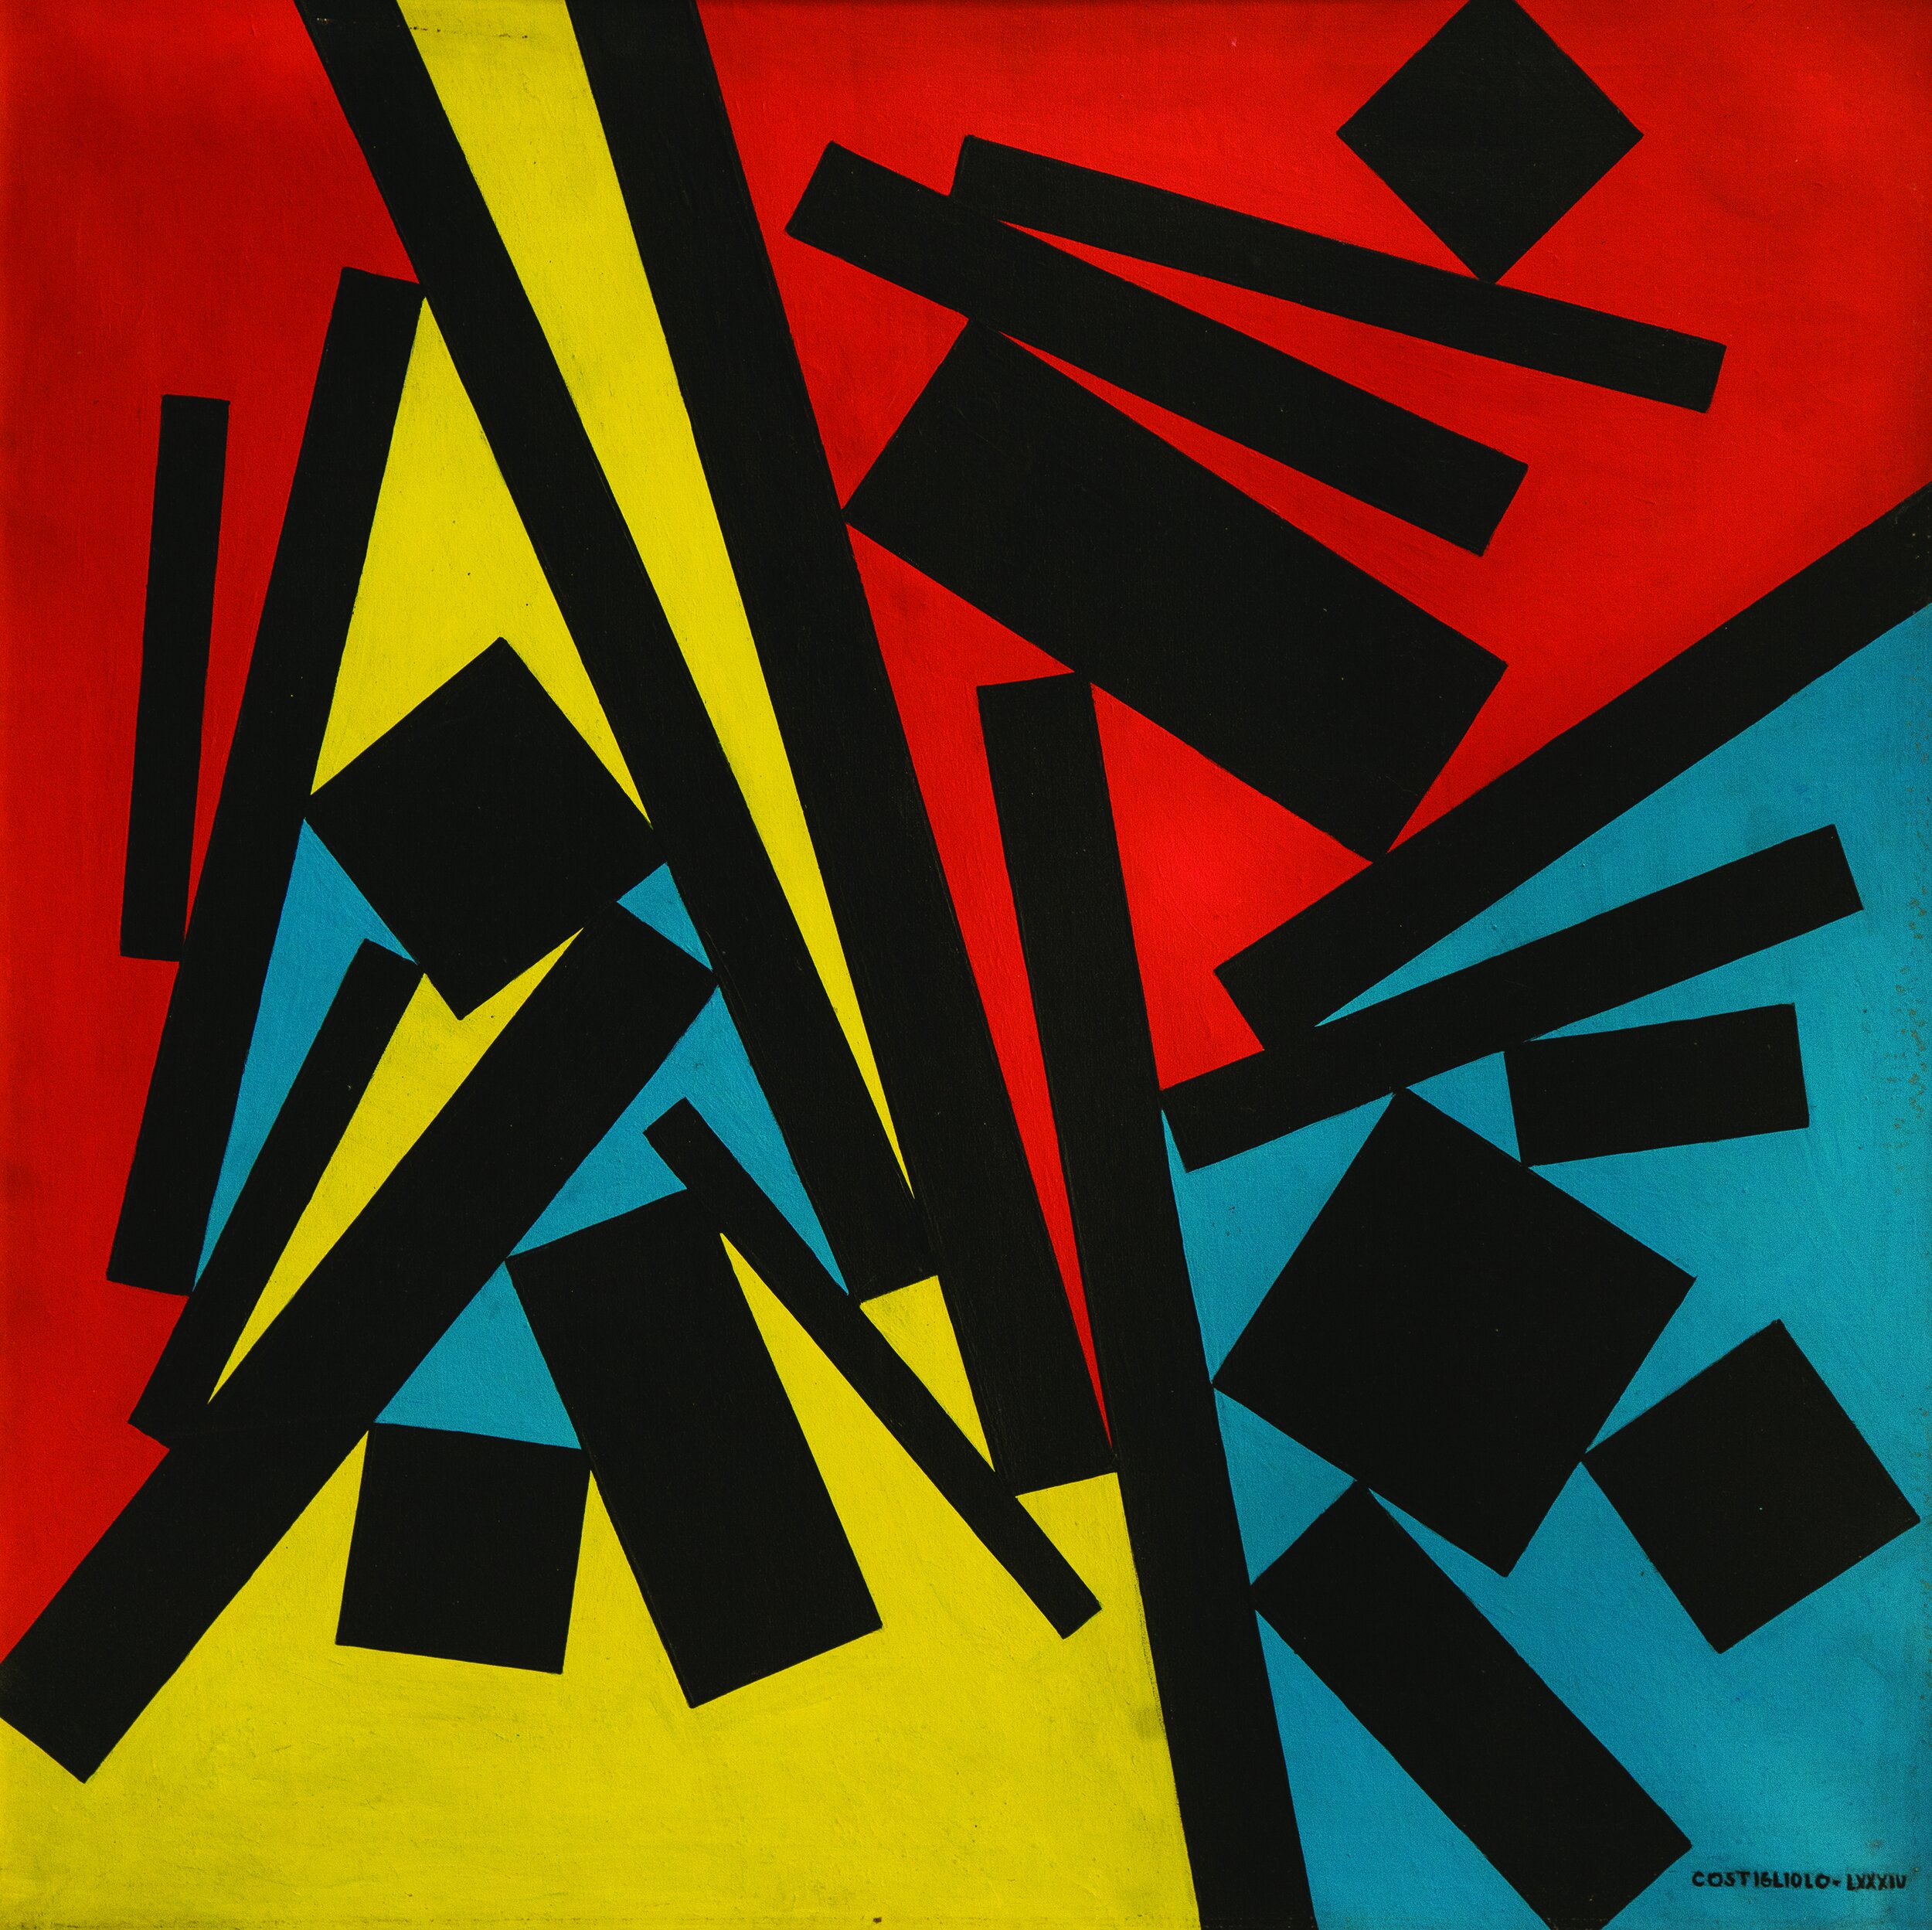   José Pedro Costigliolo      Rectángulos y cuadrados en fondo azul, rojo y amarillo   ,  c. 1980 Acrílico sobre tela 70 x 70 cm Galería SUR 